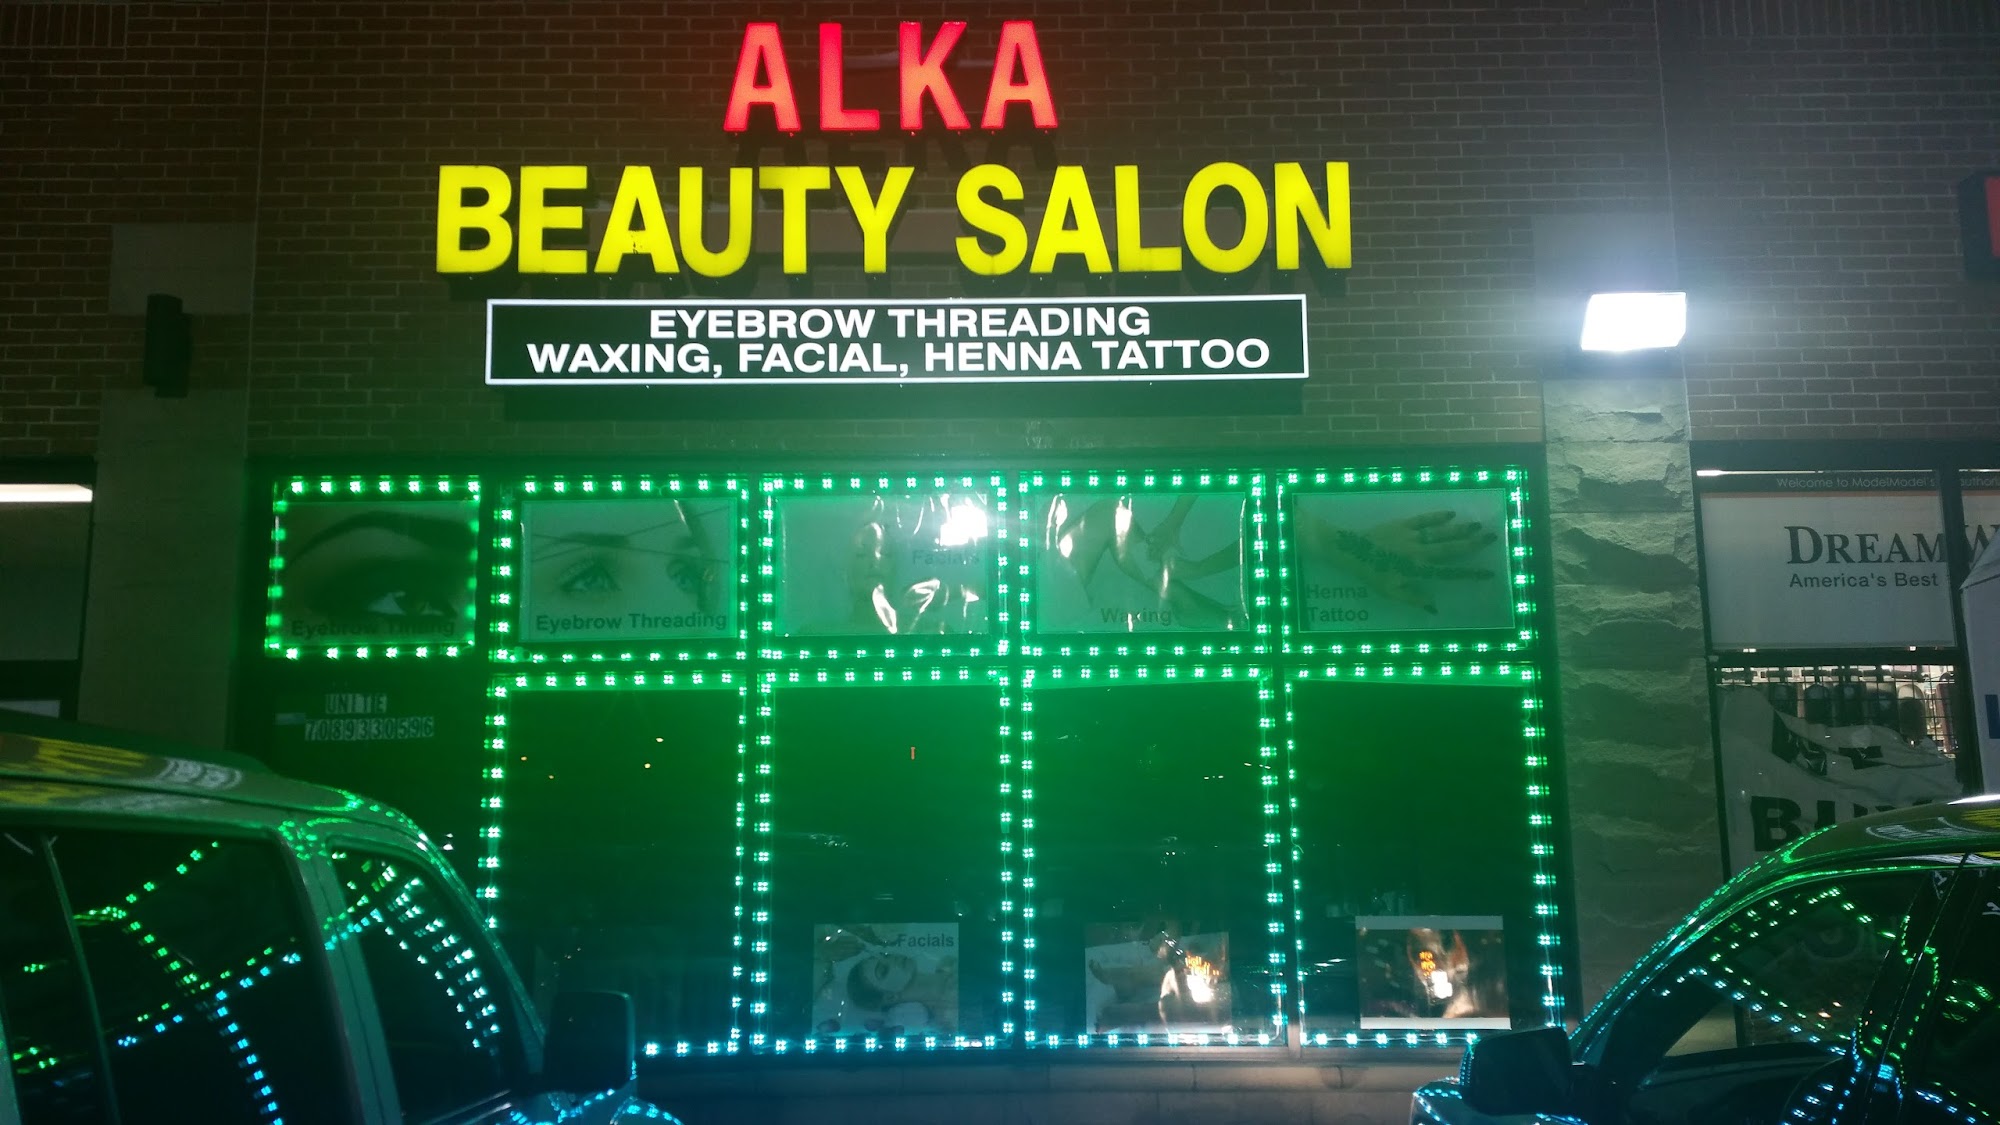 Alka Beauty Salon 1 E State St, Calumet City Illinois 60409